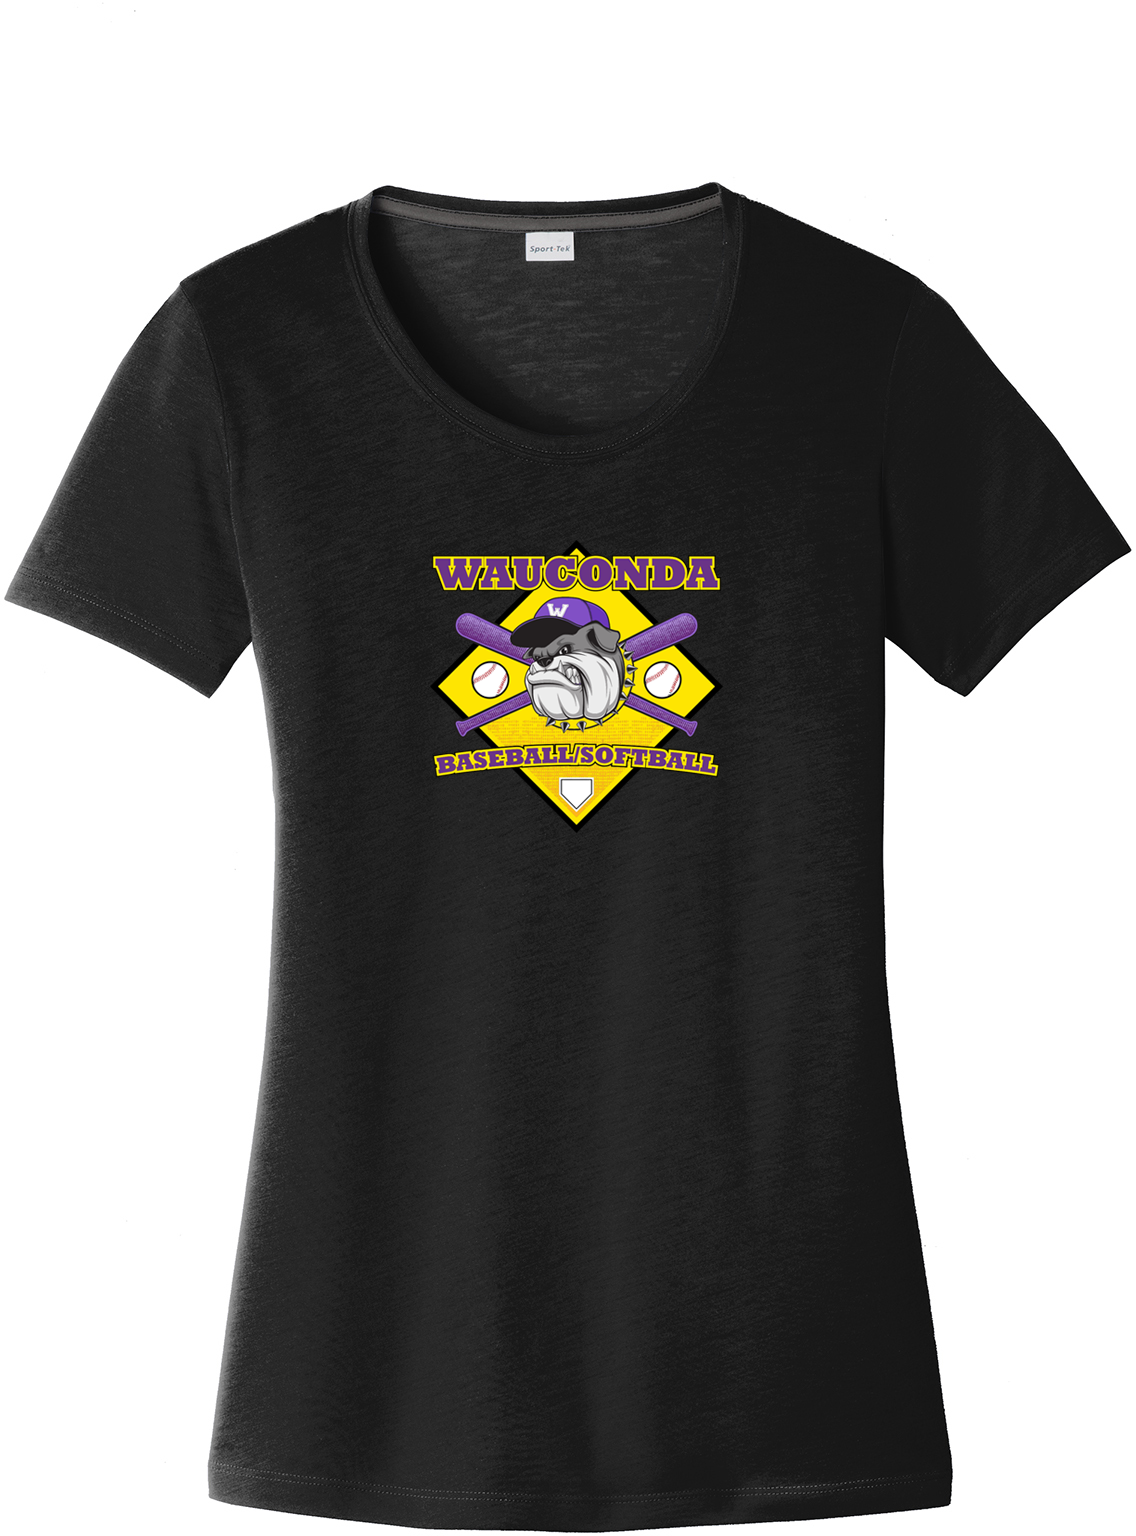 Wauconda Baseball & Softball Women's CottonTouch Performance T-Shirt